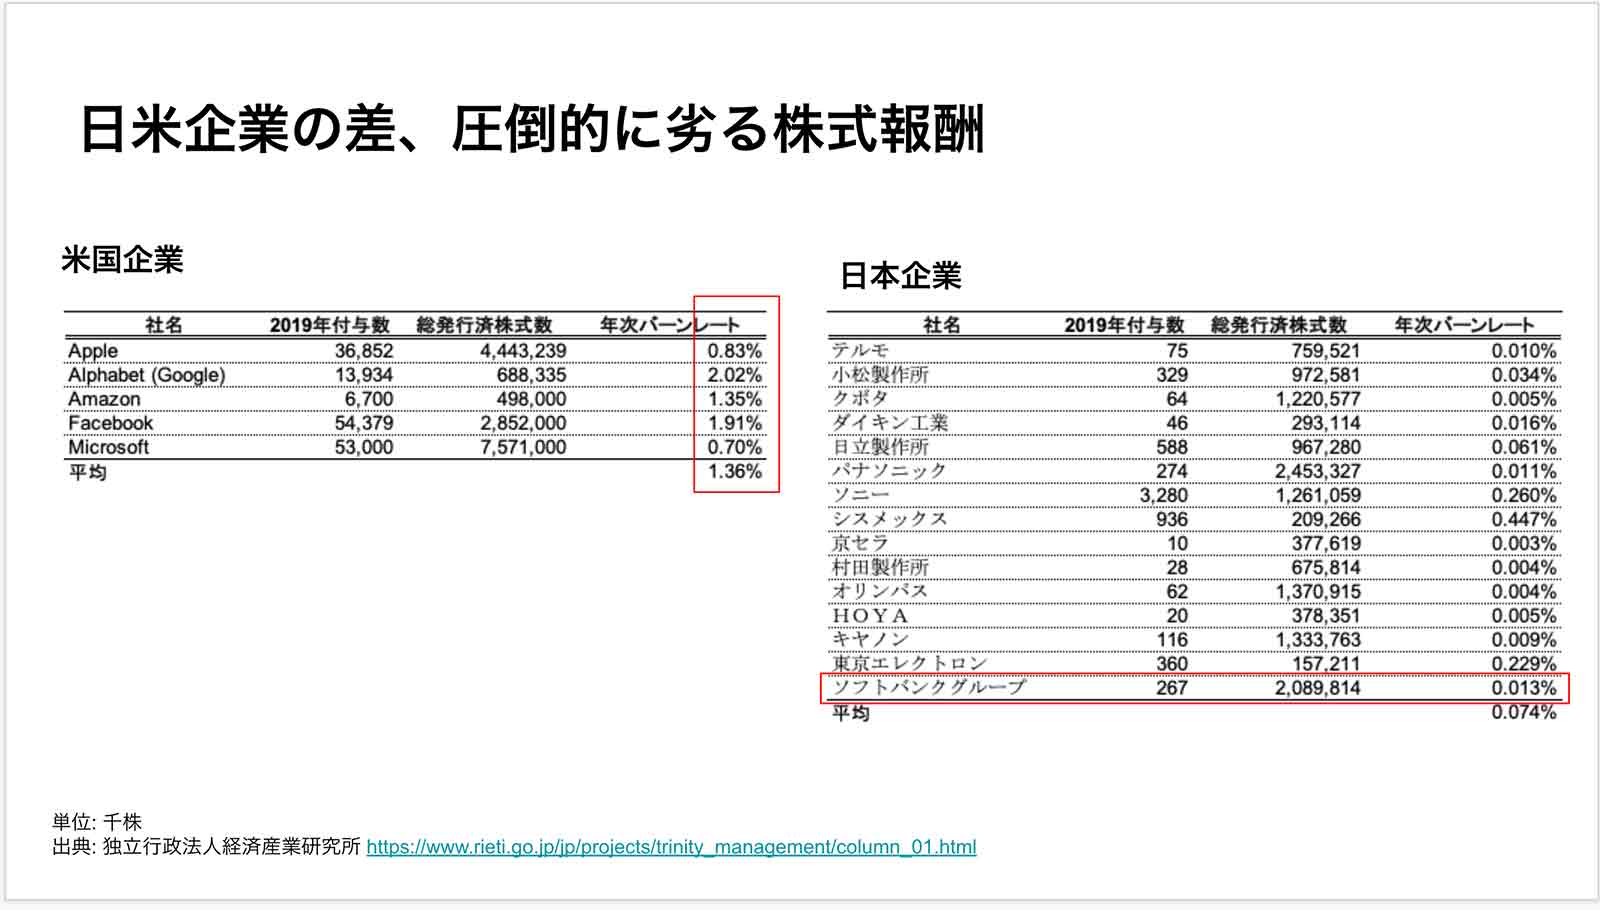 日米企業の差、圧倒的に劣る株式報酬